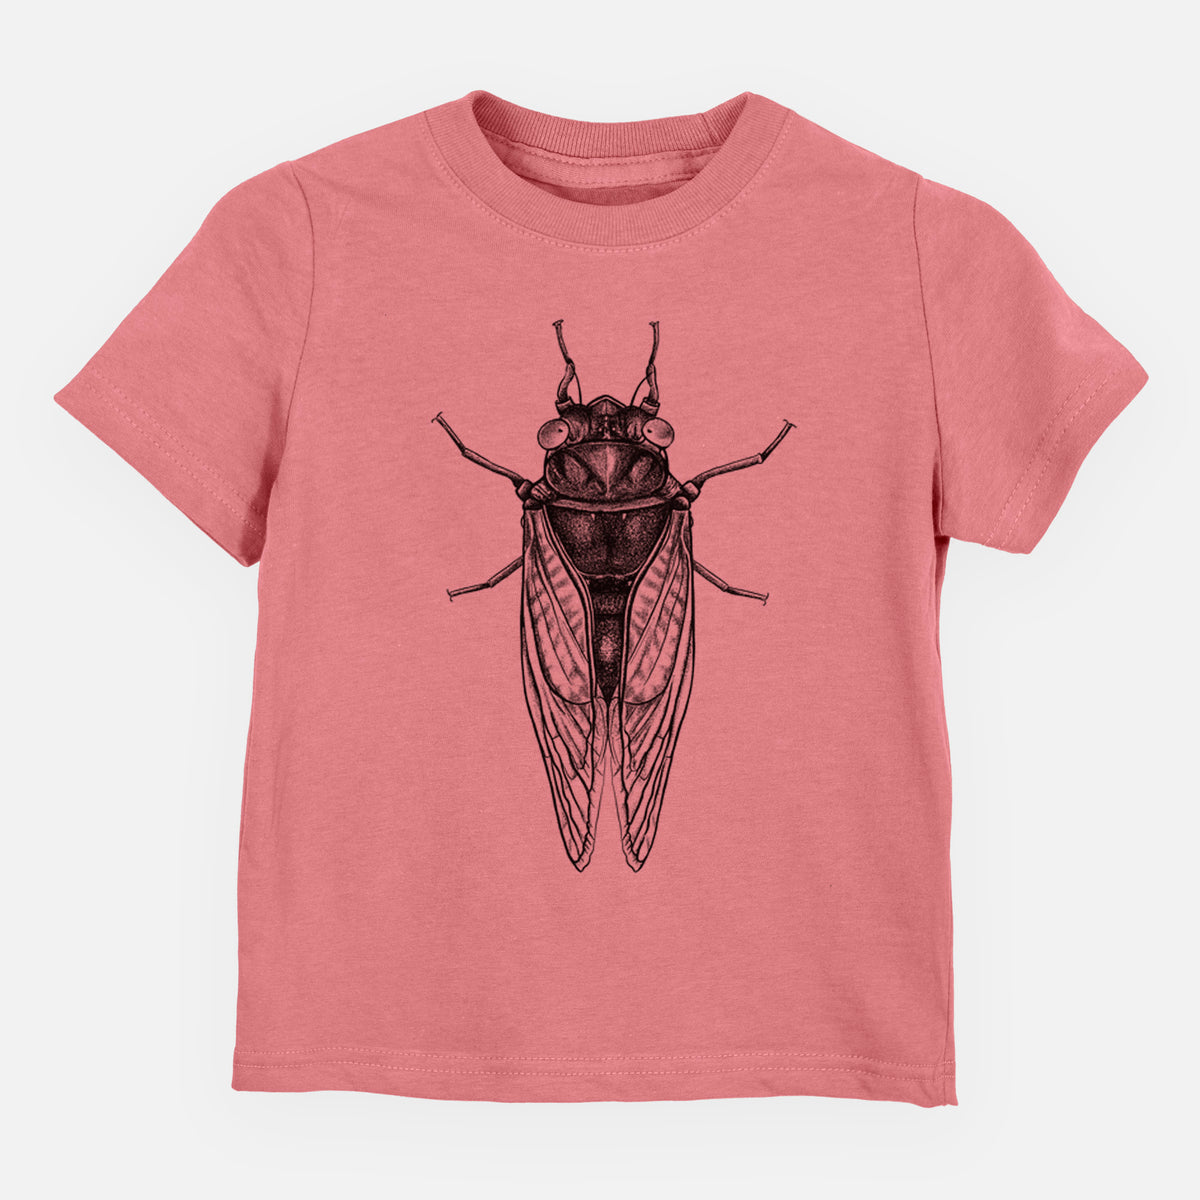 Pharoh Cicada - Magicicada septendecim - Kids Shirt